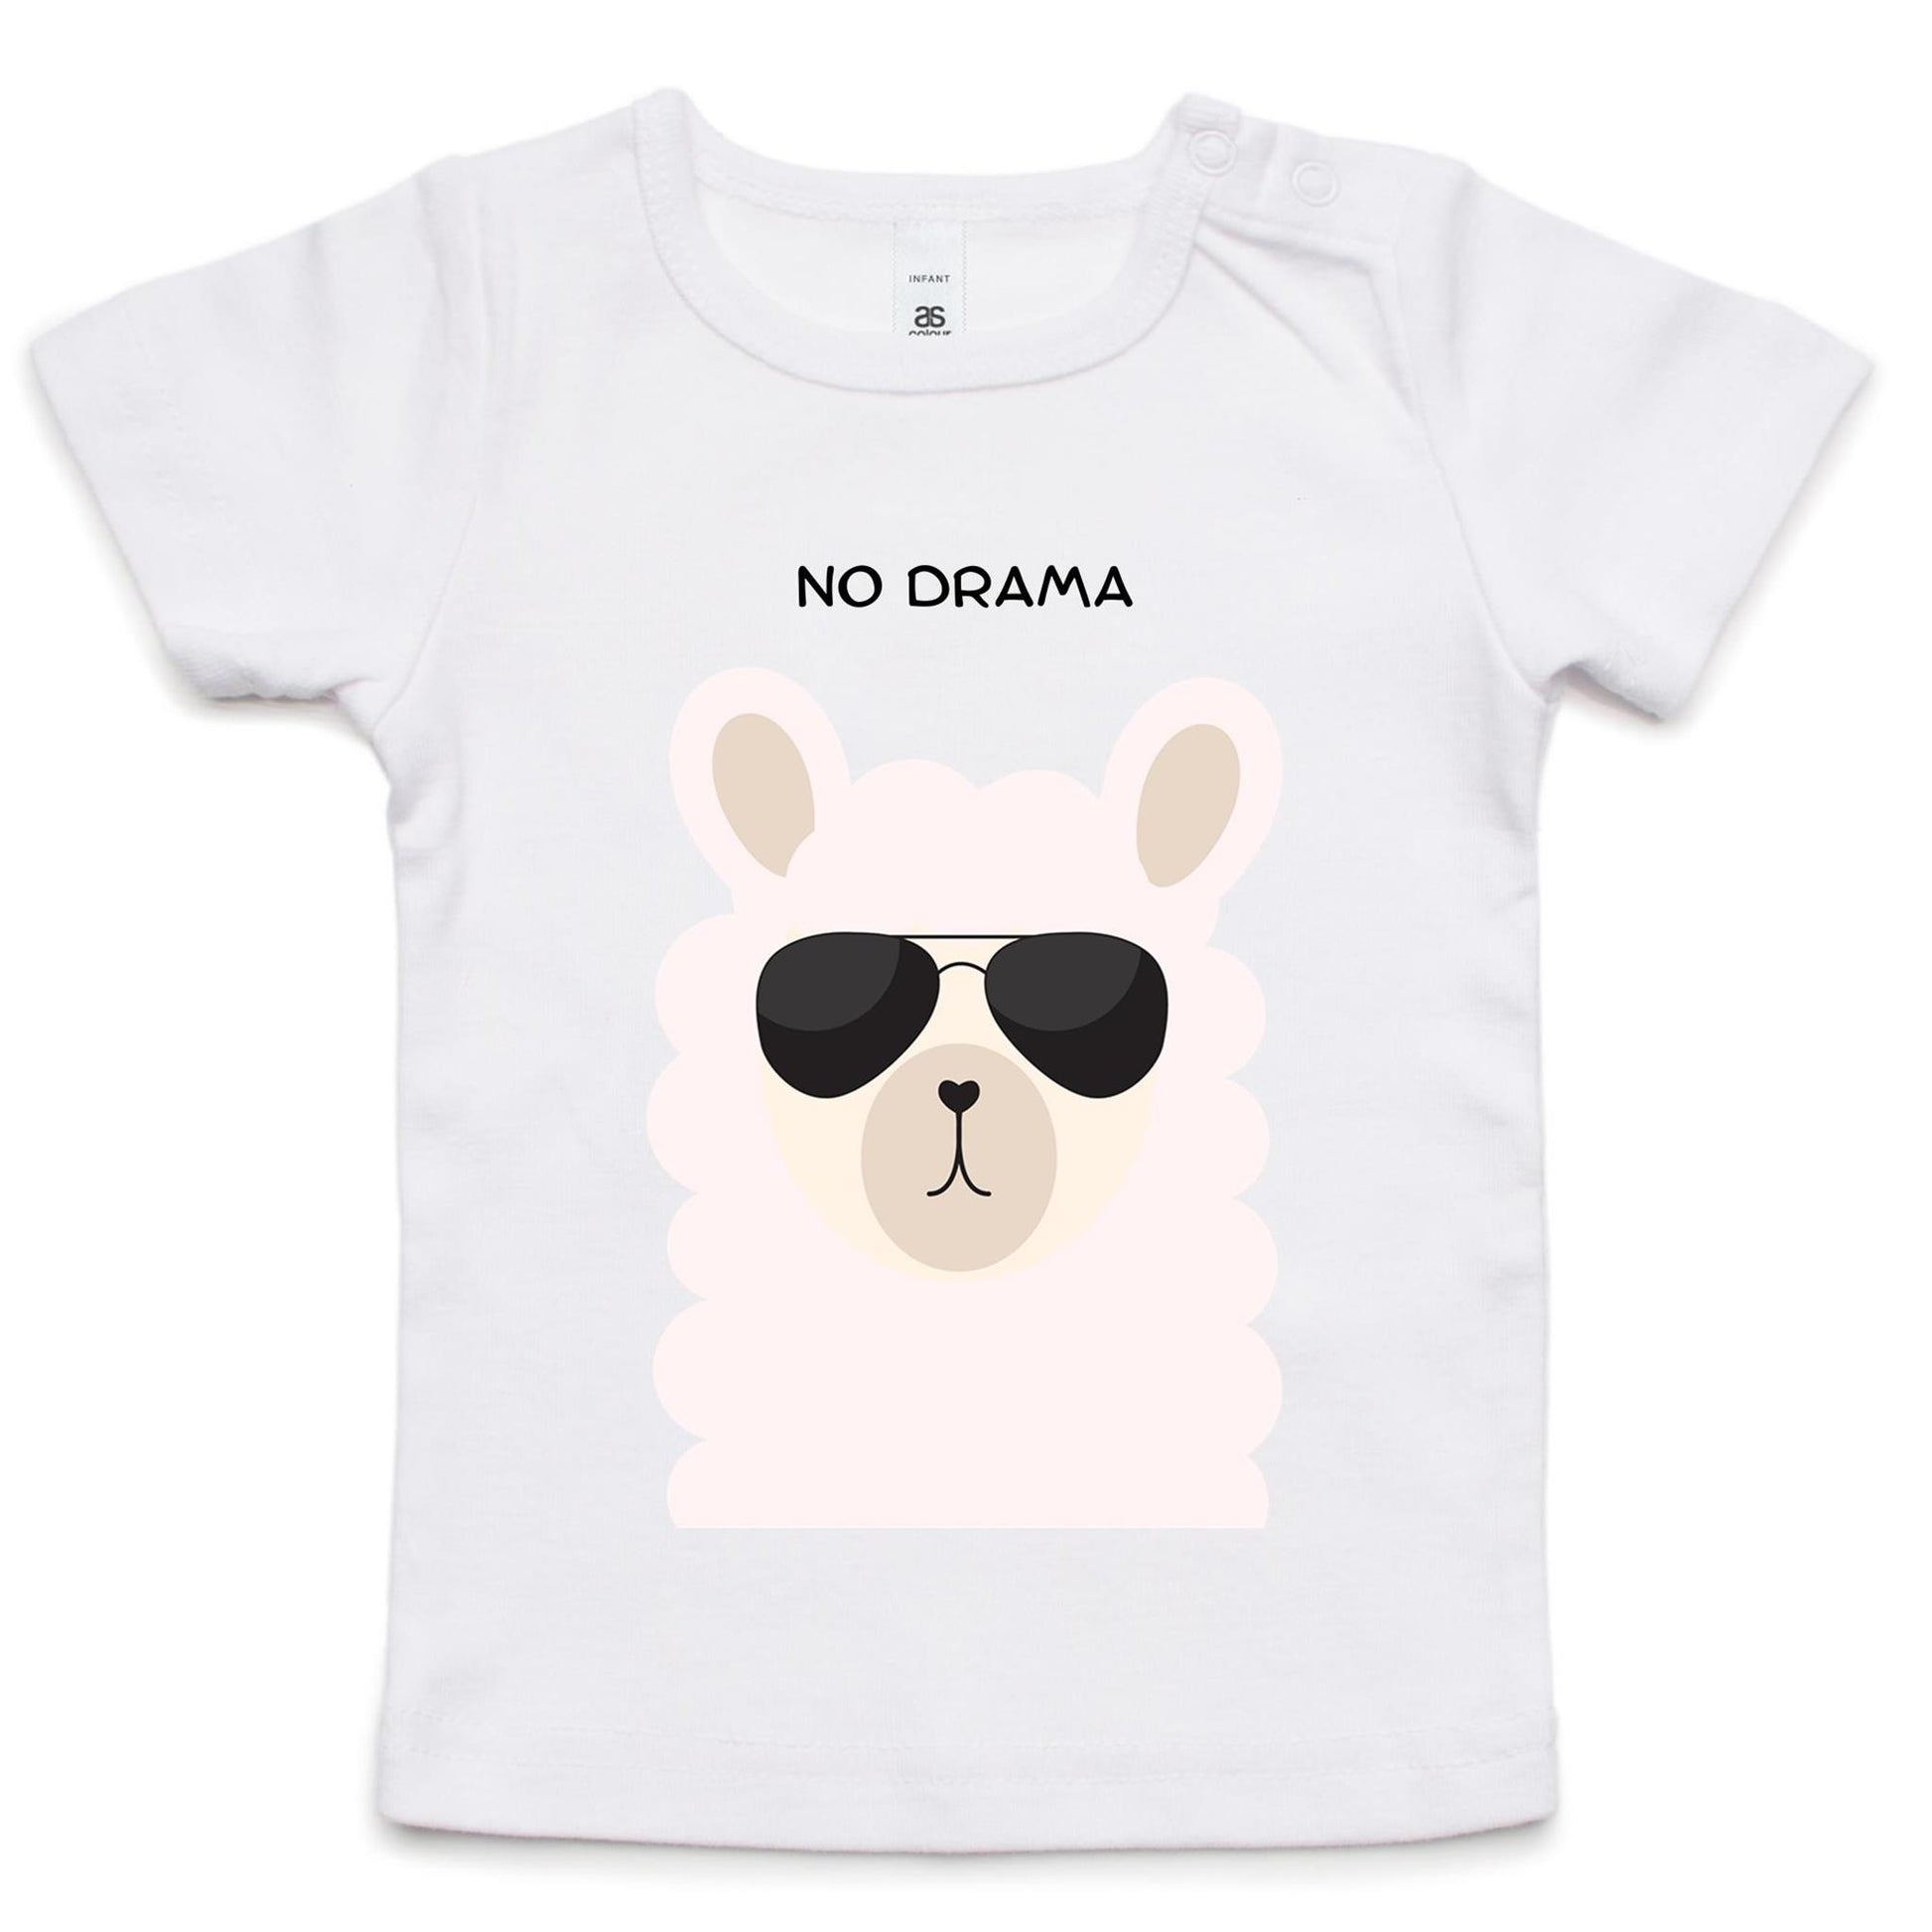 No Drama - Baby T-shirt White Baby T-shirt animal